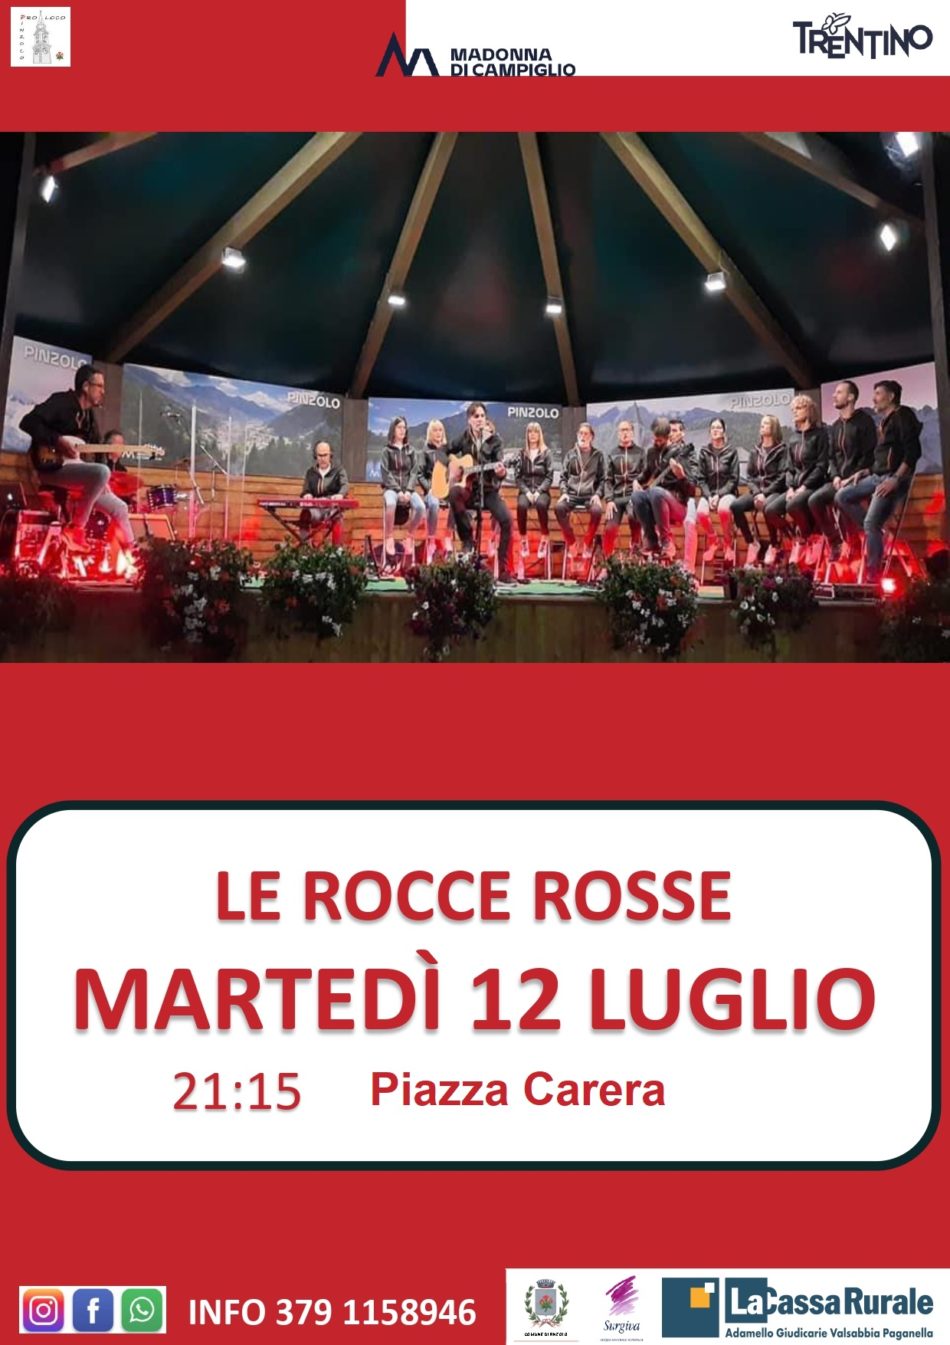 Martedì 12 luglio, Piazza Carera: “Le Rocce rosse”